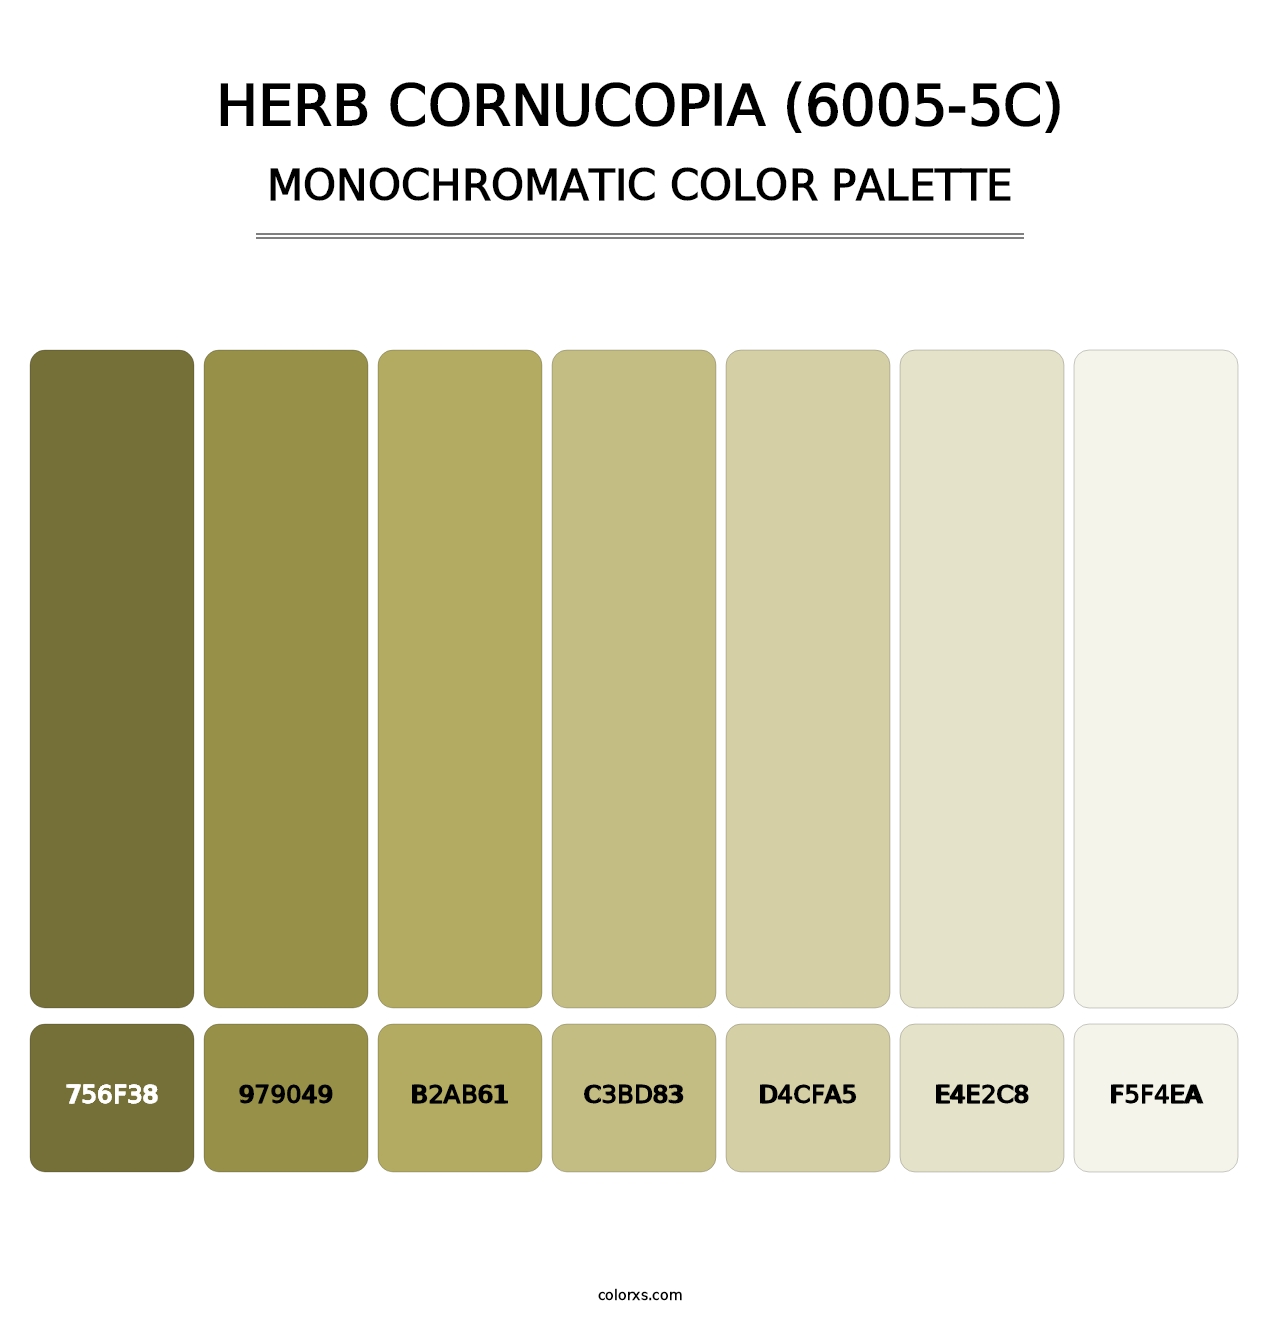 Herb Cornucopia (6005-5C) - Monochromatic Color Palette